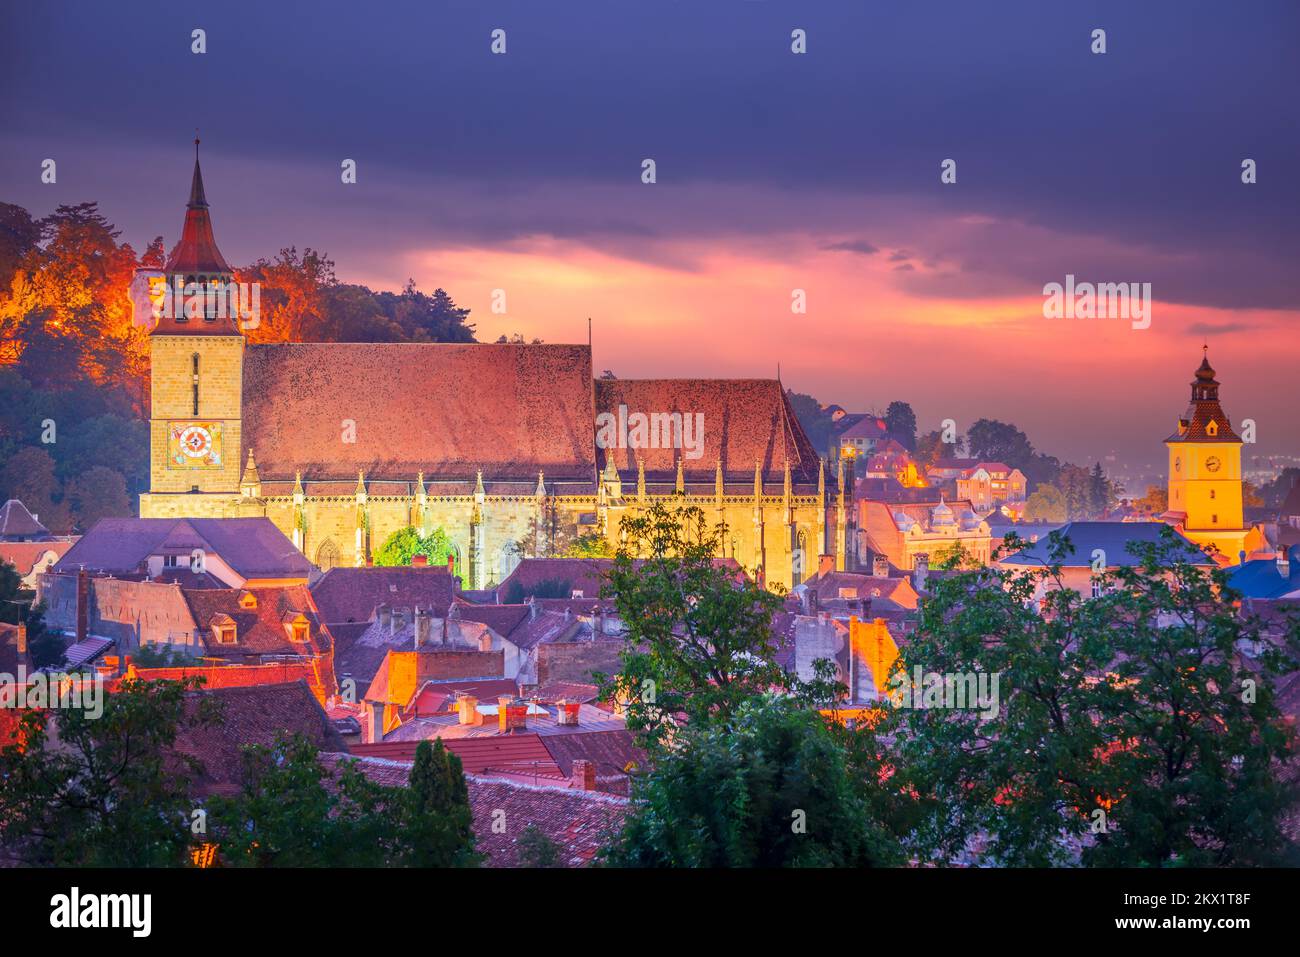 Brasov, Rumänien - die berühmte historische Stadt Siebenbürgen, ein landschaftliches Wahrzeichen Europas. Schwarze Kirche und Ratshaus. Stockfoto